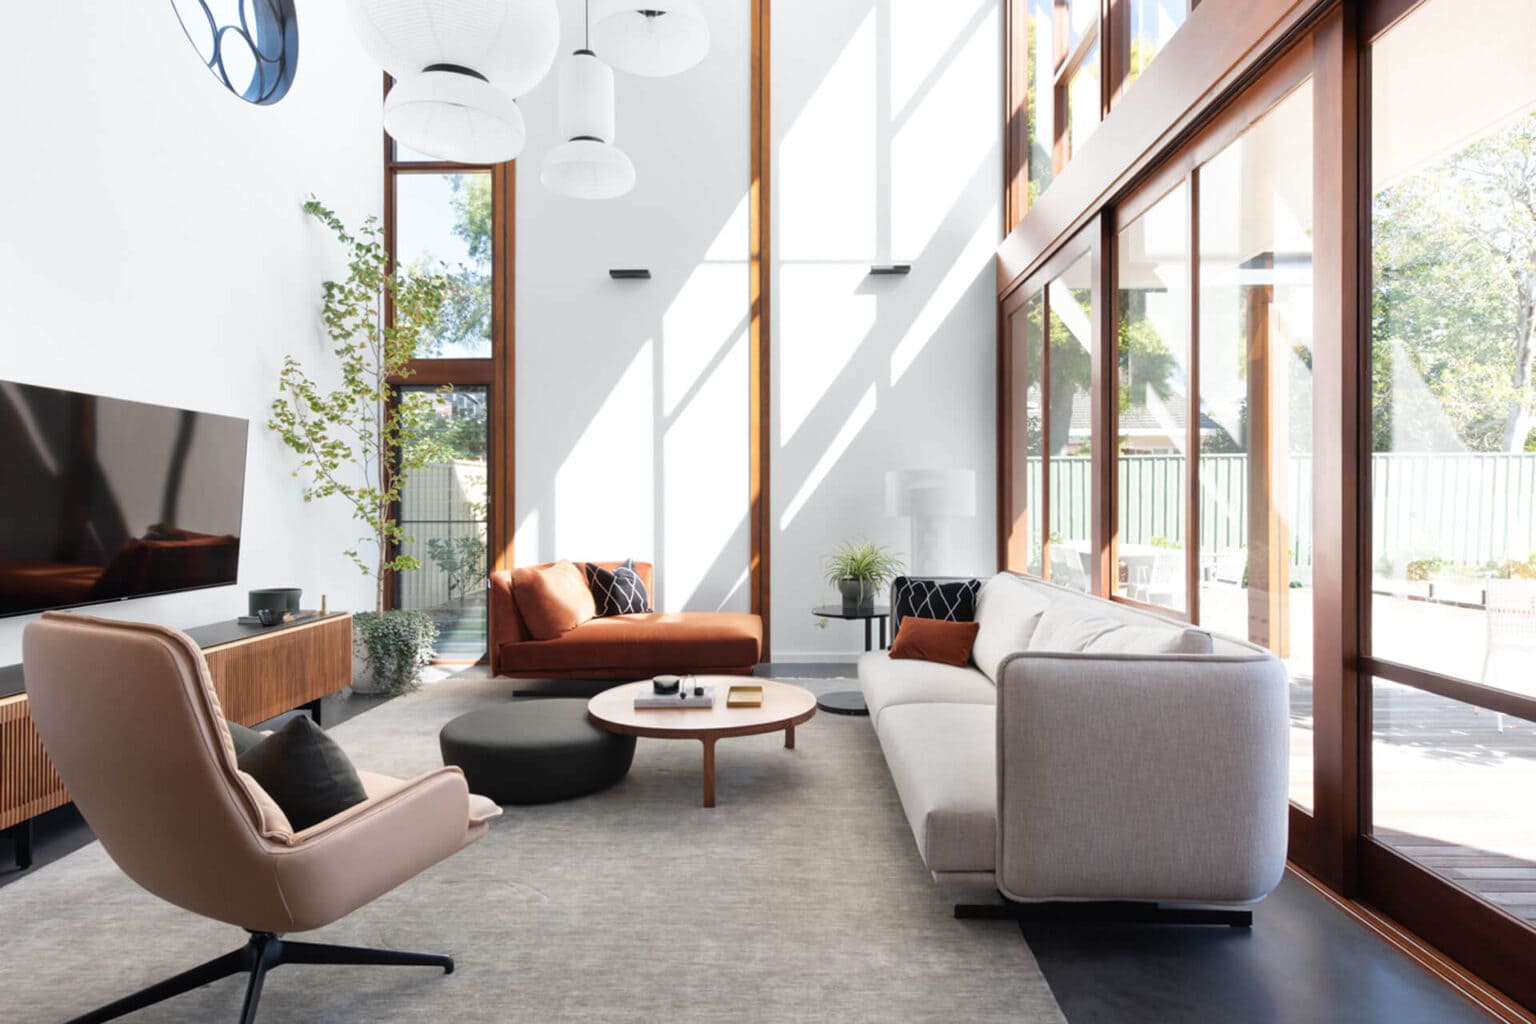 Applecross Home Project - Colourcube Interiors, Perth WA